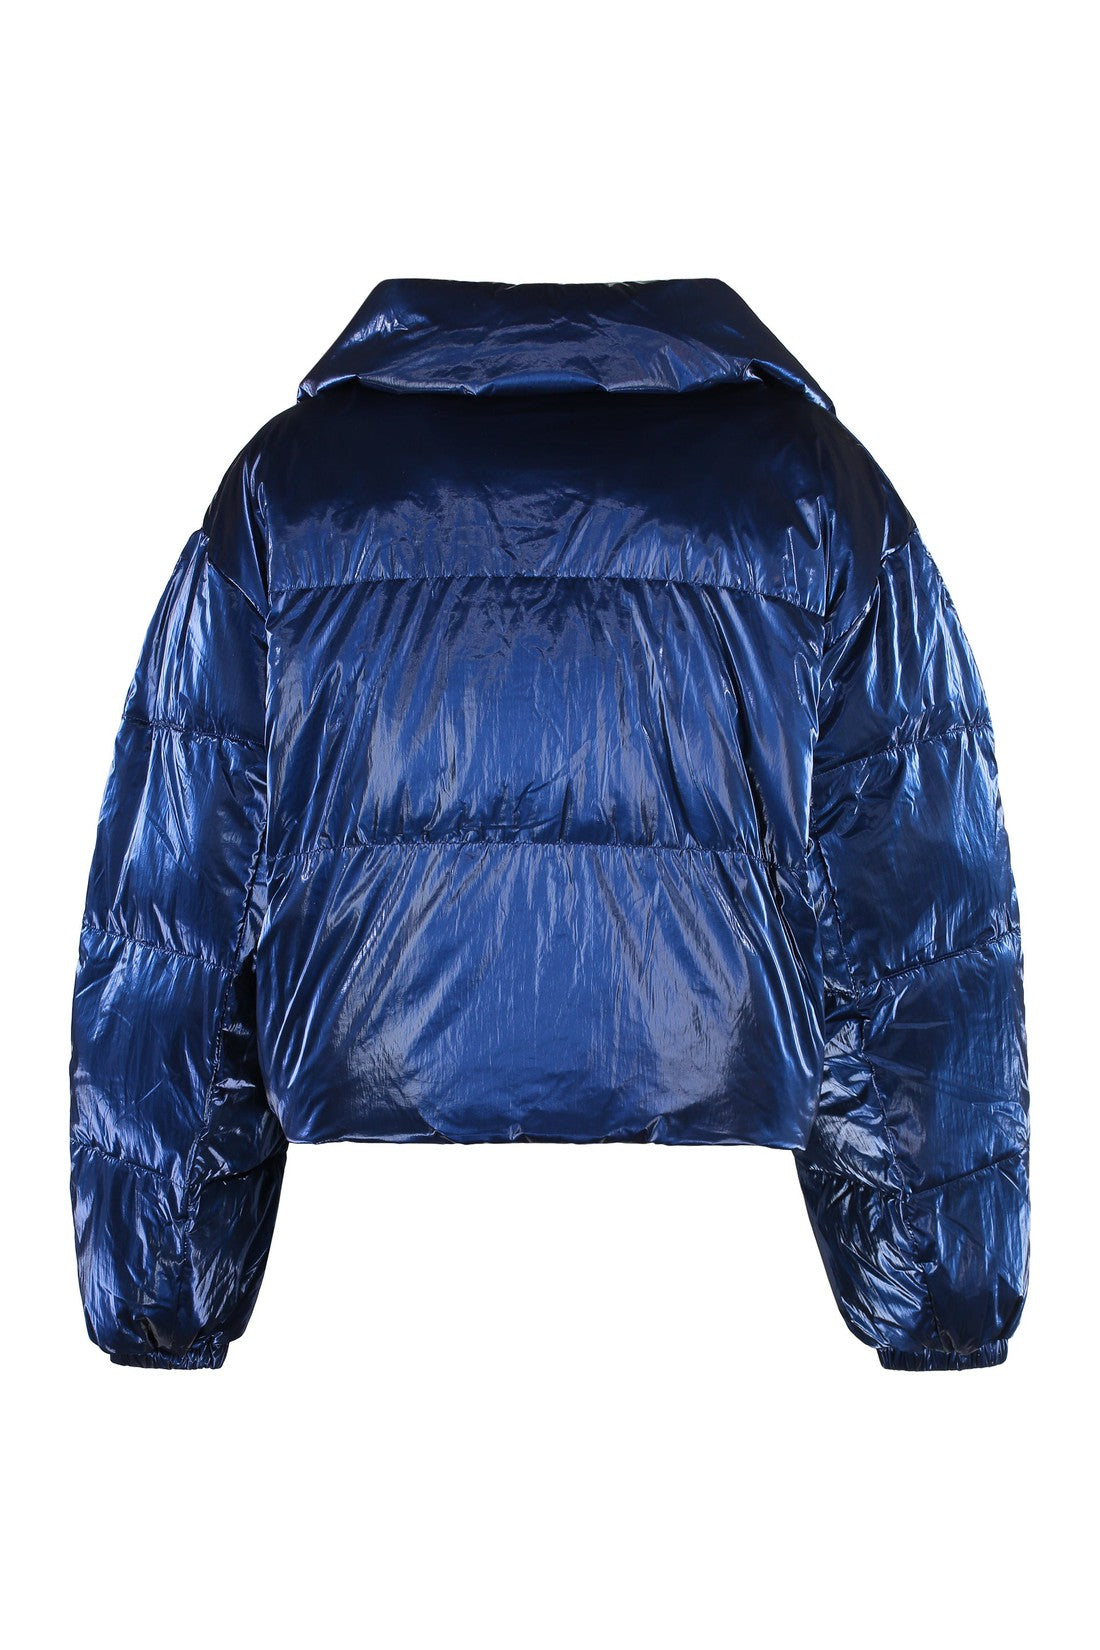 Marant étoile-OUTLET-SALE-Telia shiny fabric down jacket-ARCHIVIST